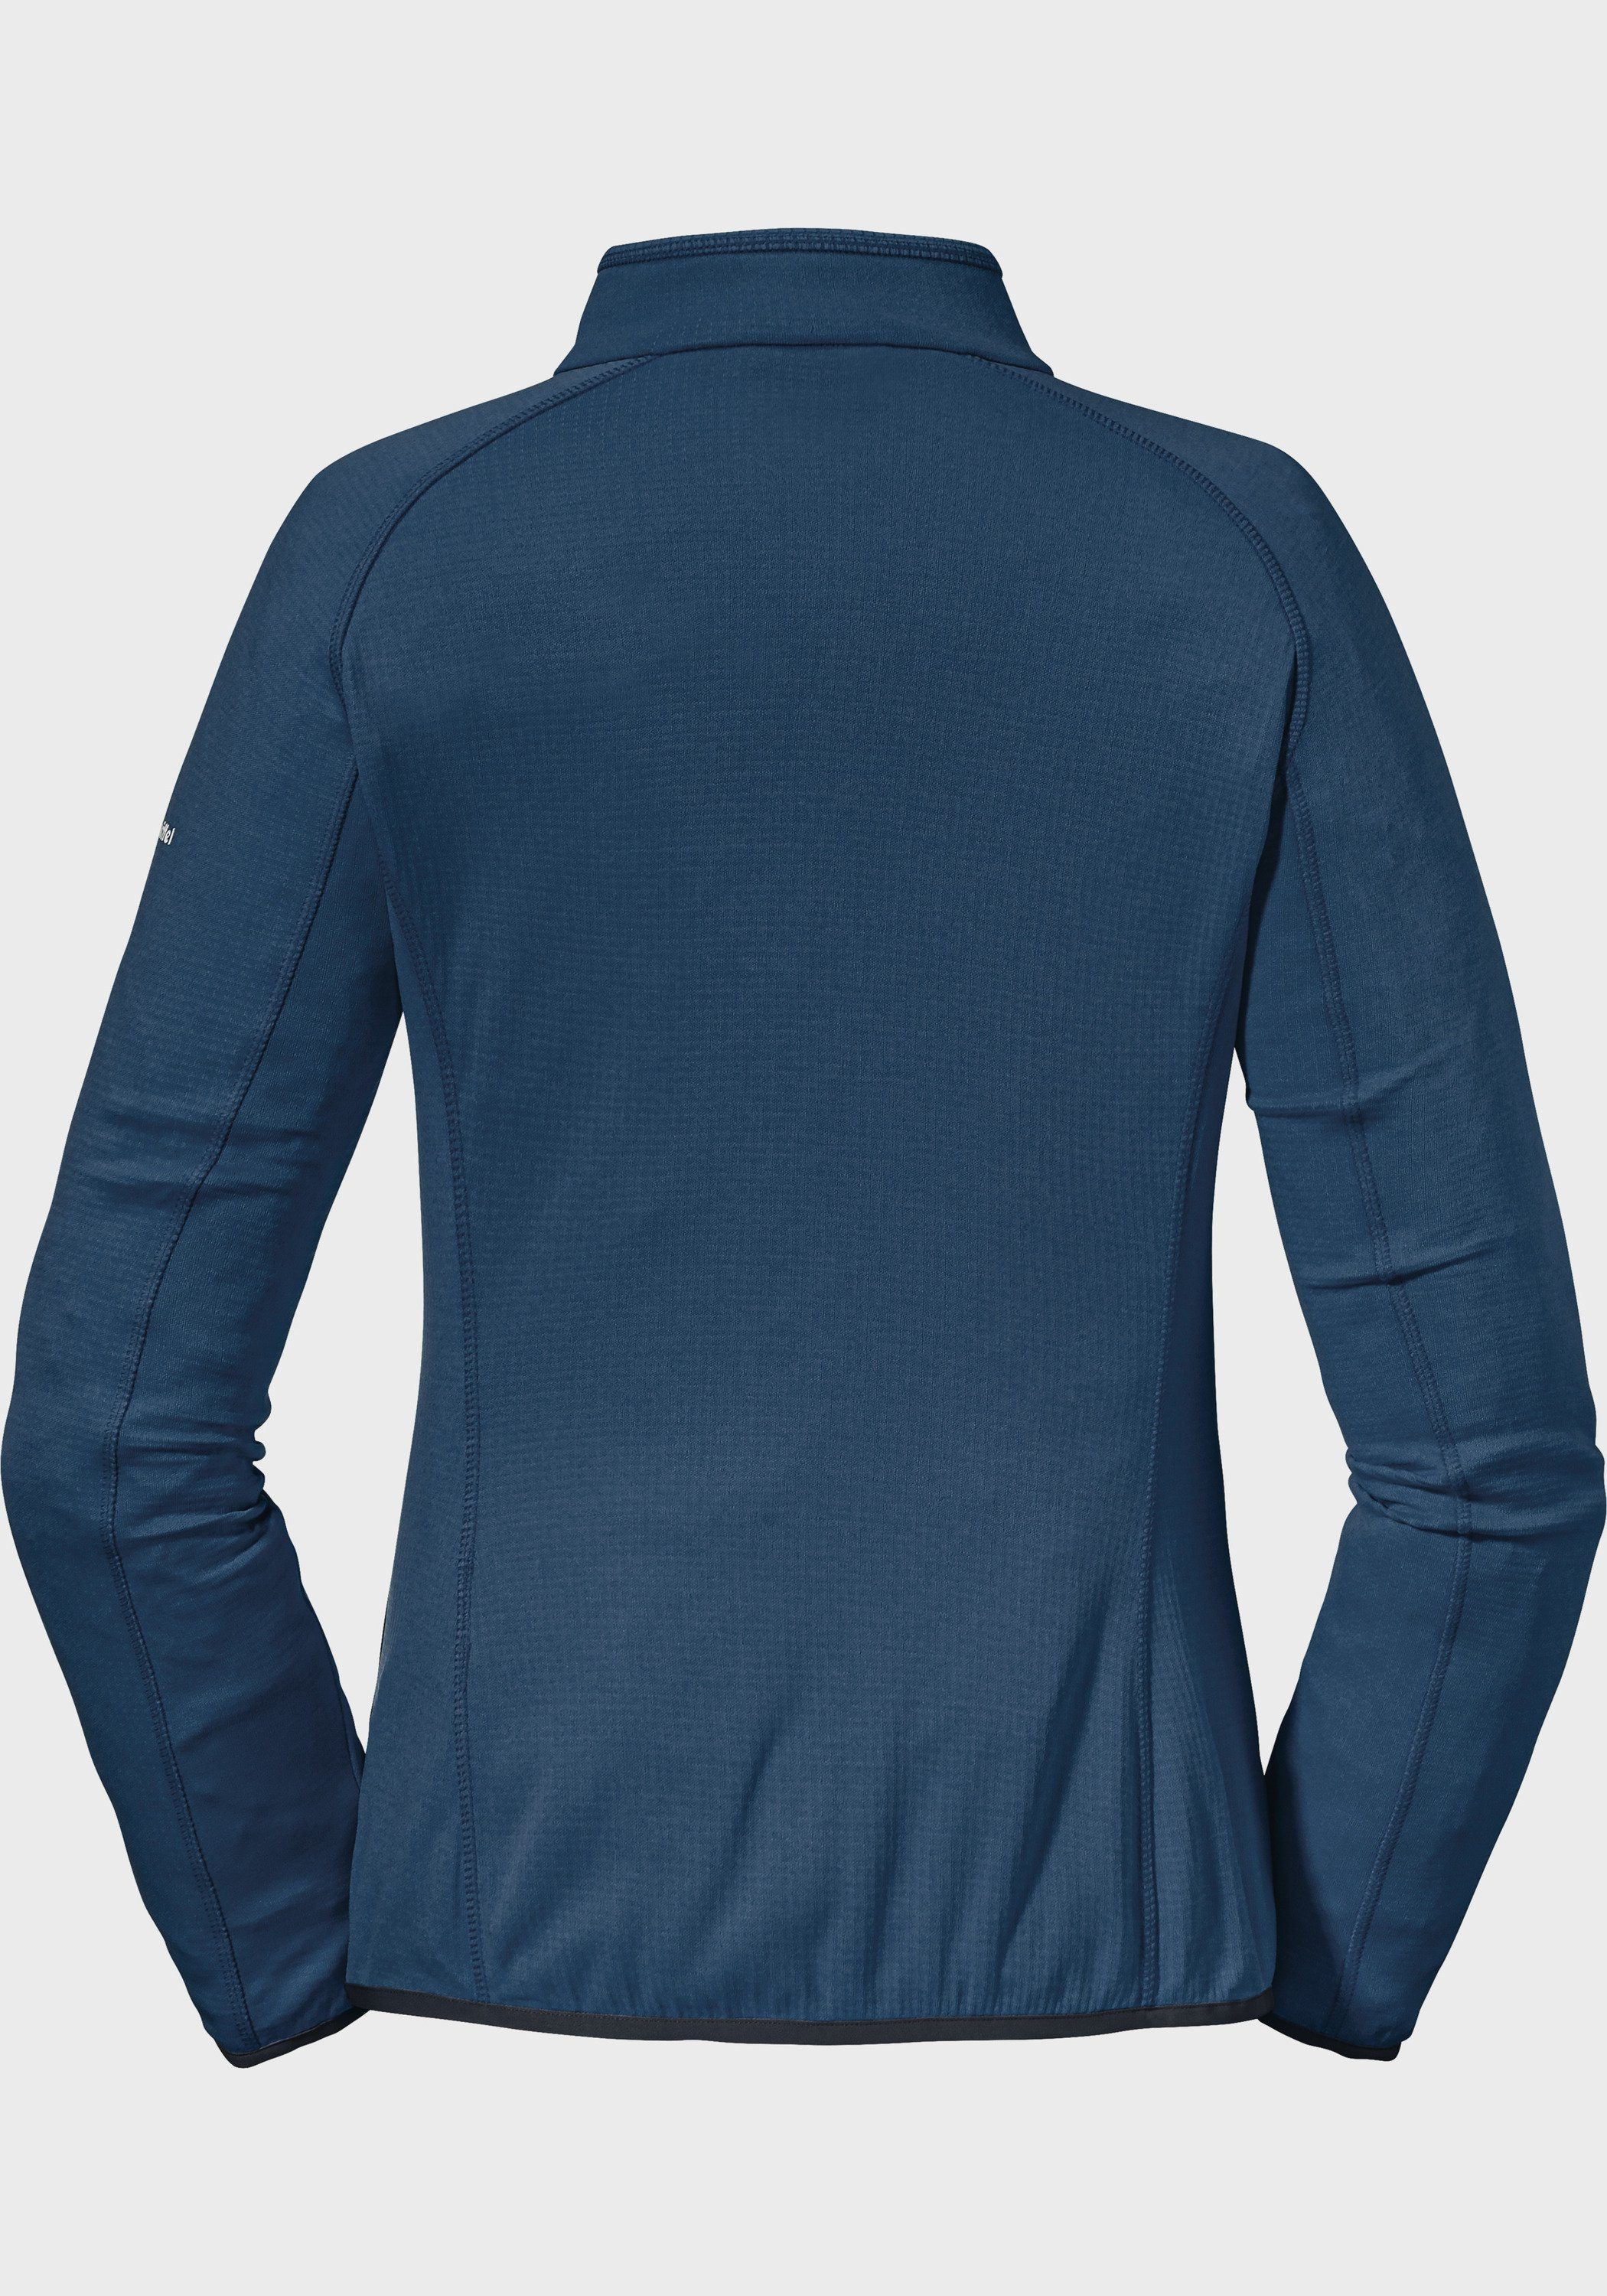 L Fleece Jacket blau Schöffel Rotwand Fleecejacke